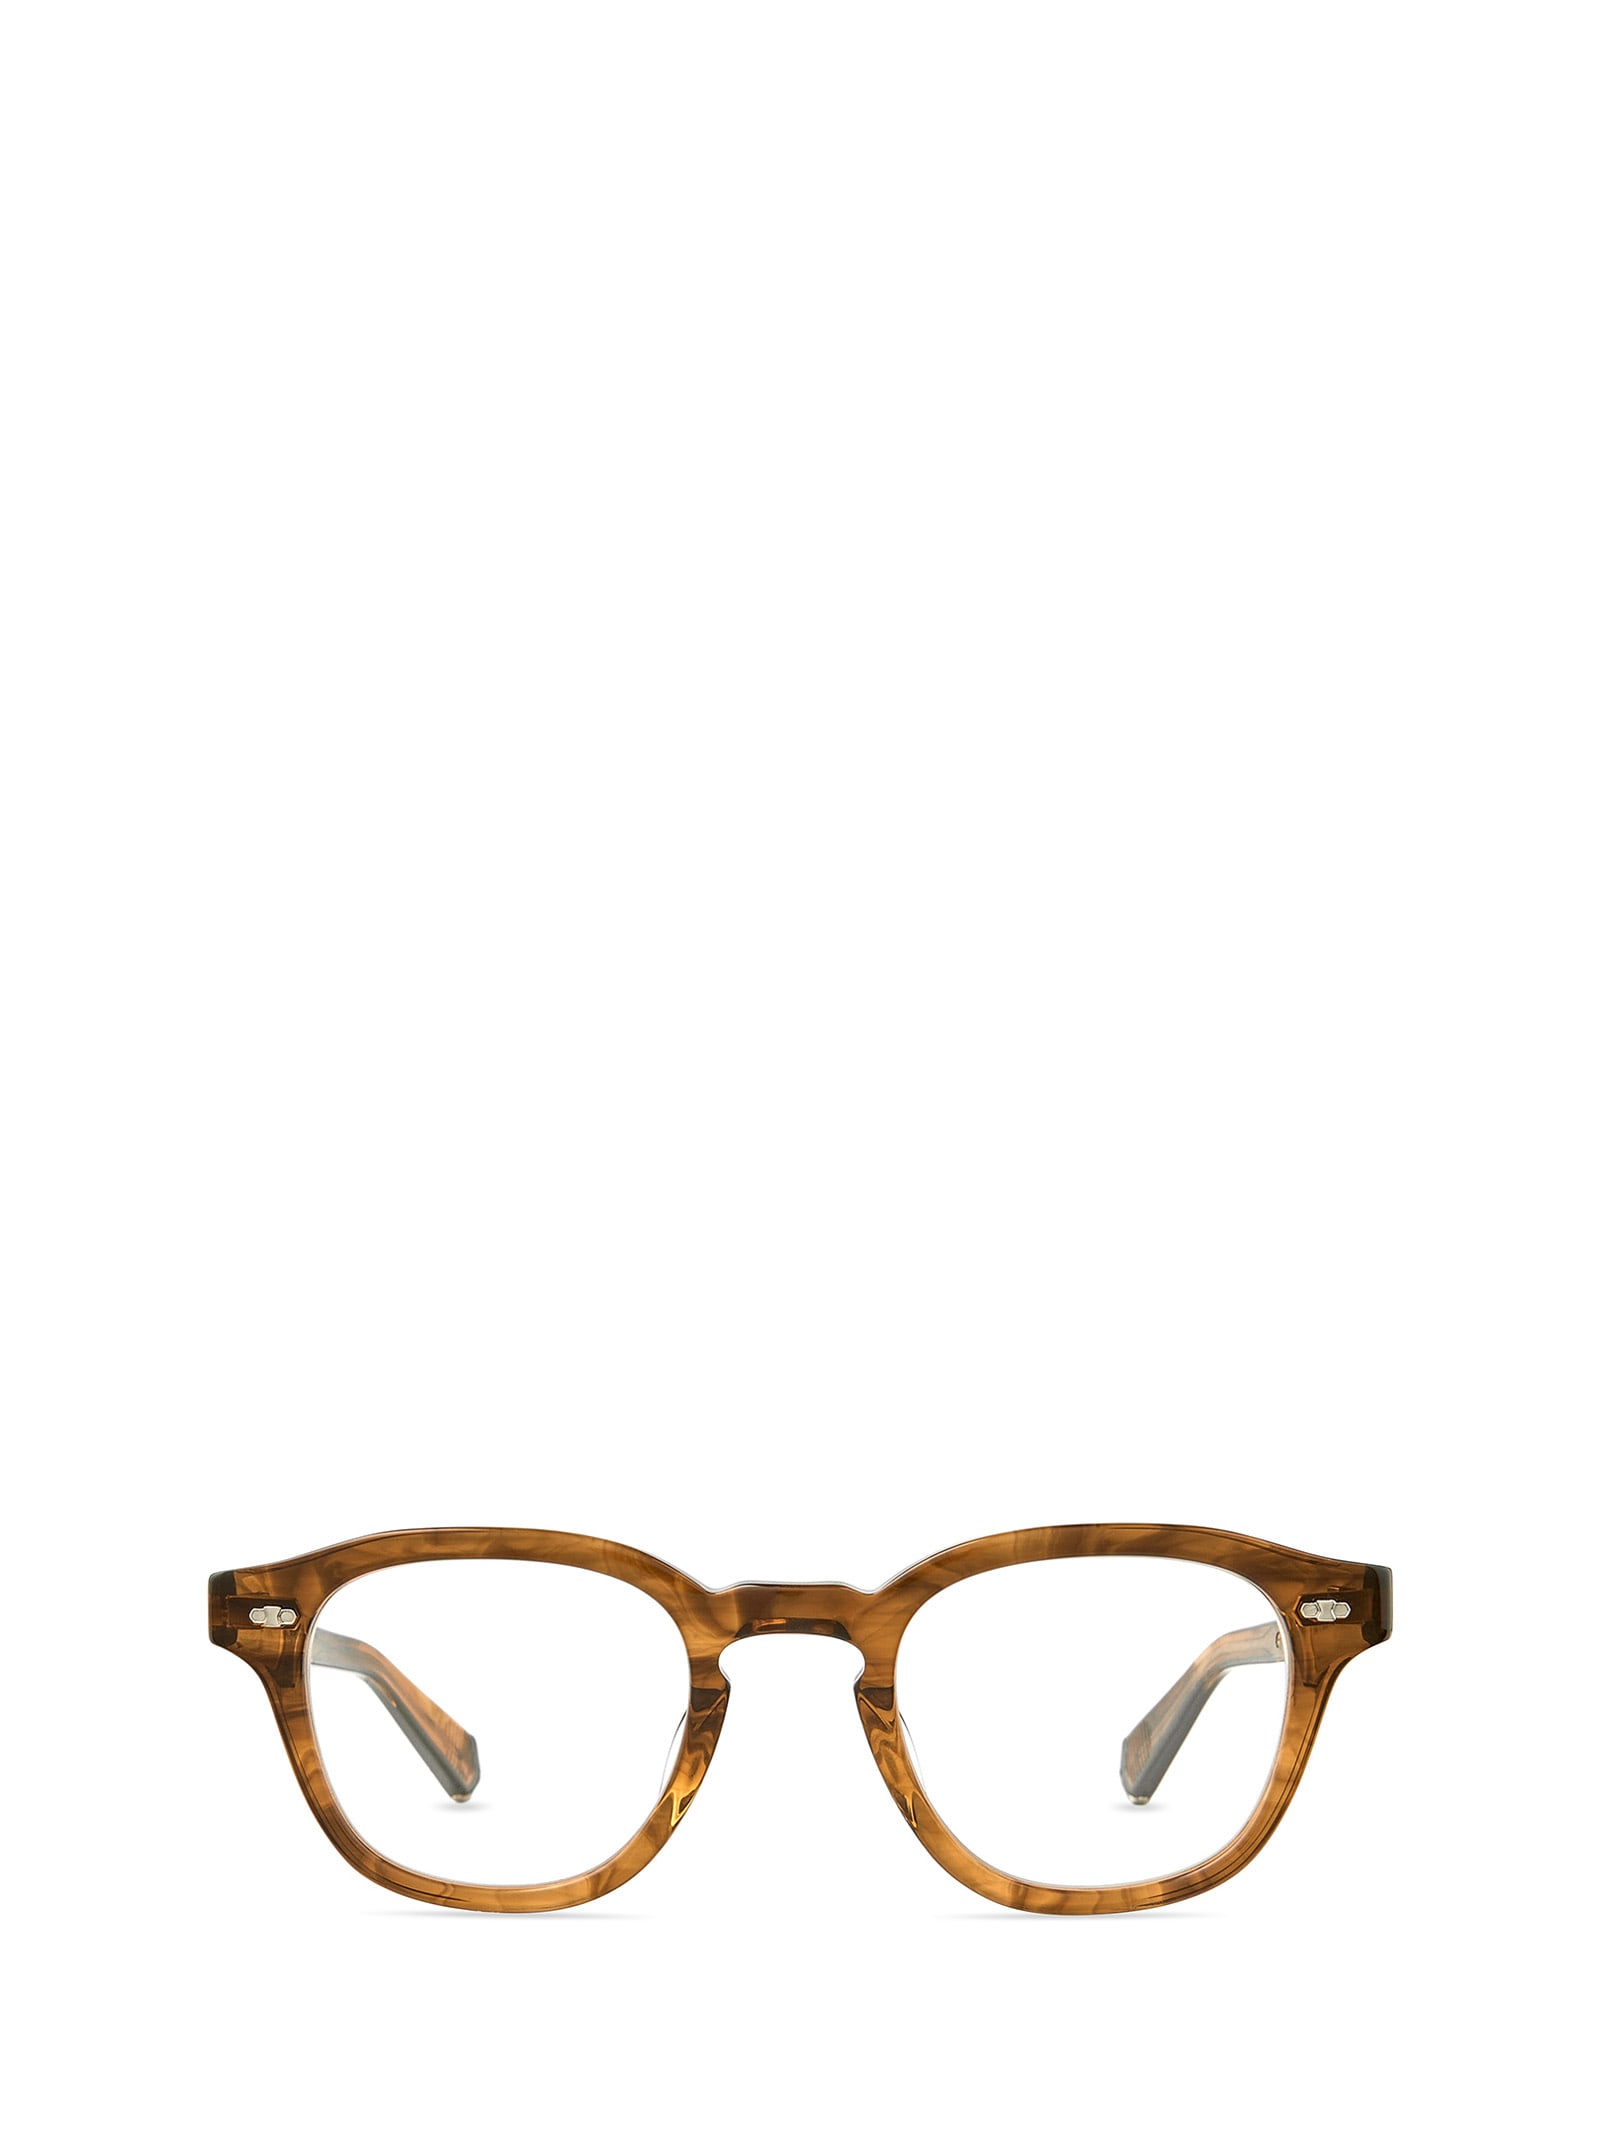 James C Marbled Rye-white Gold Glasses